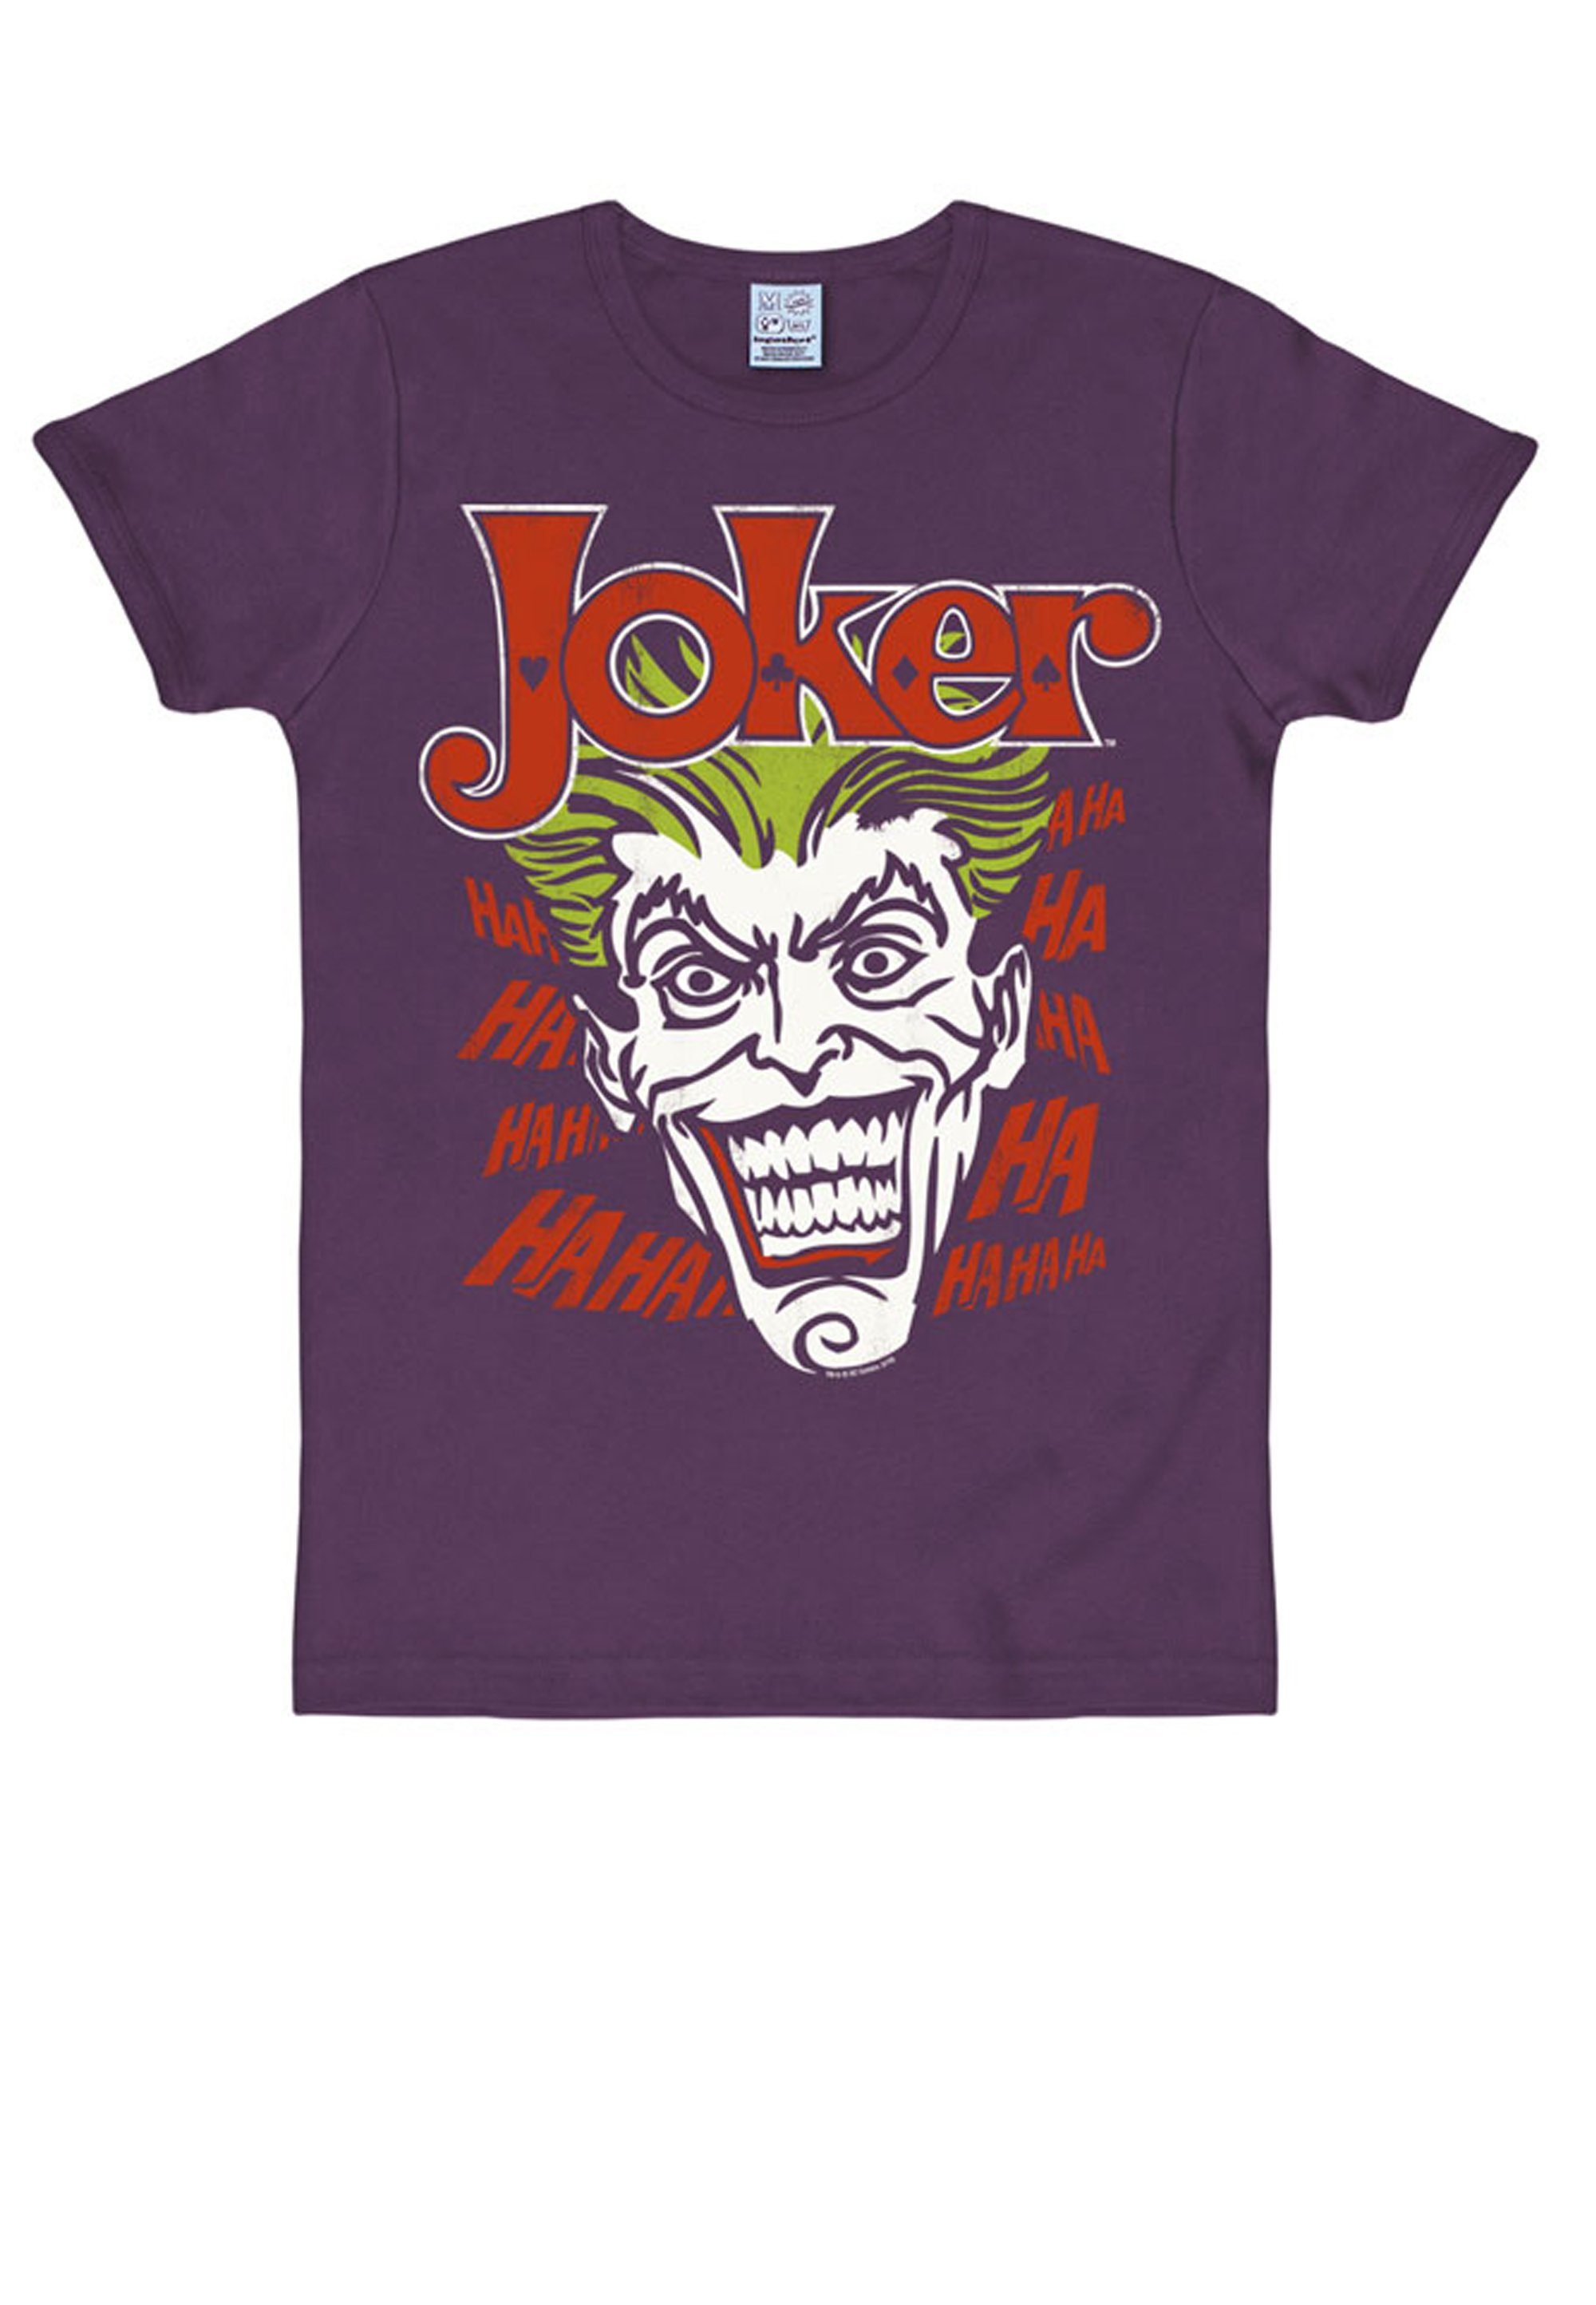 T-Shirt Batman LOGOSHIRT Joker Joker-Print bunt kultigem mit